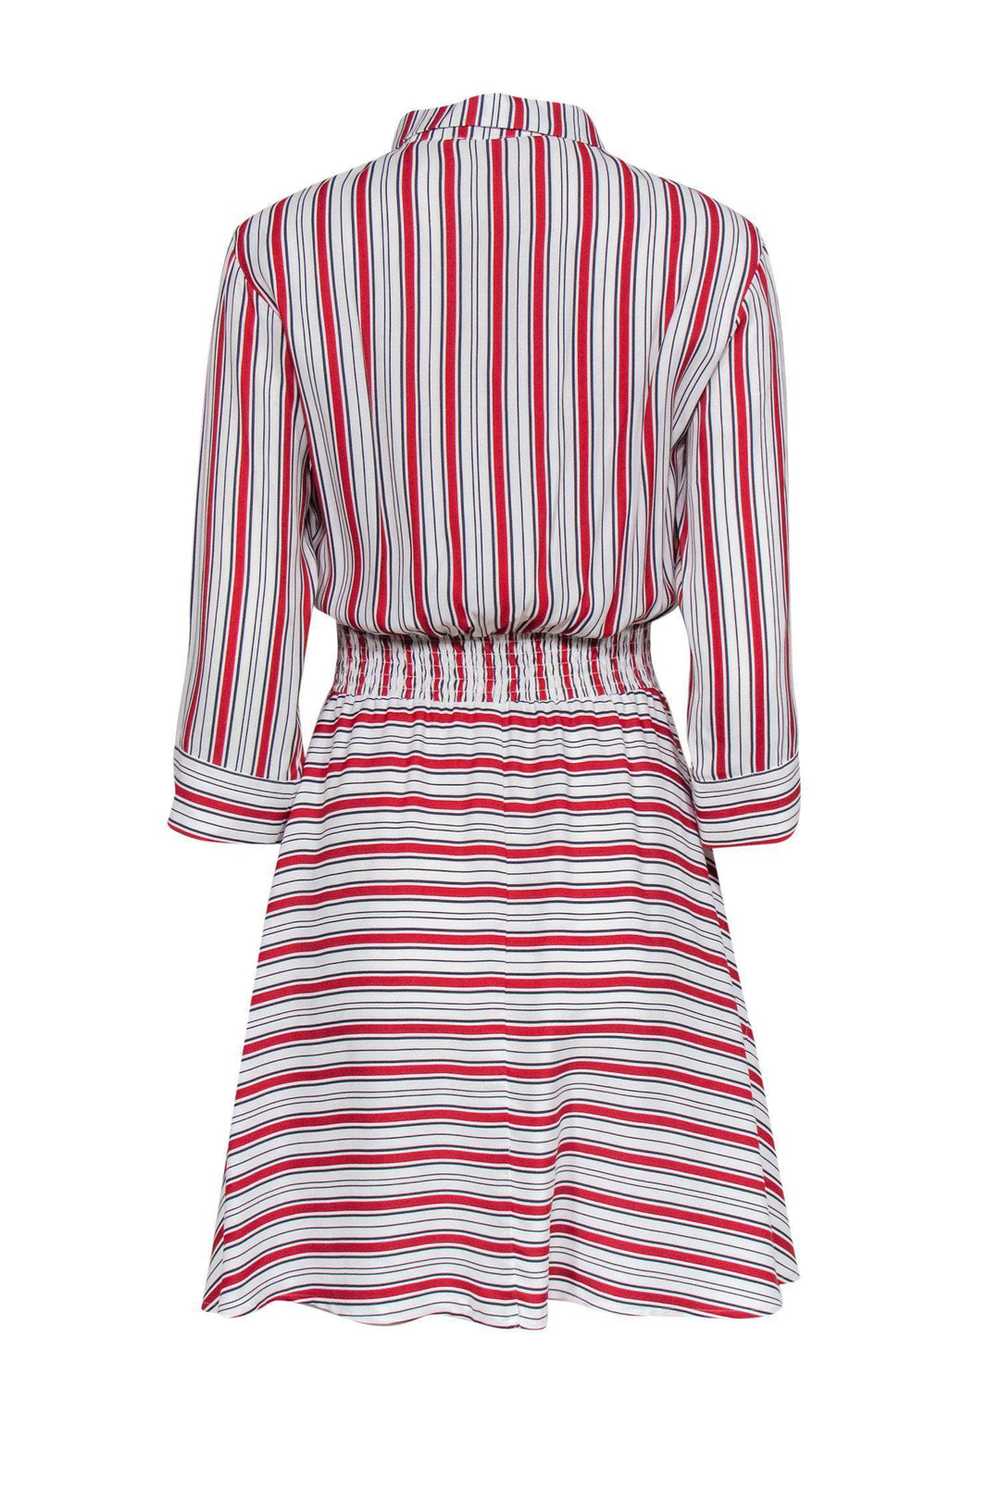 Maje - White & Red Striped Shirt Dress Sz L - image 3